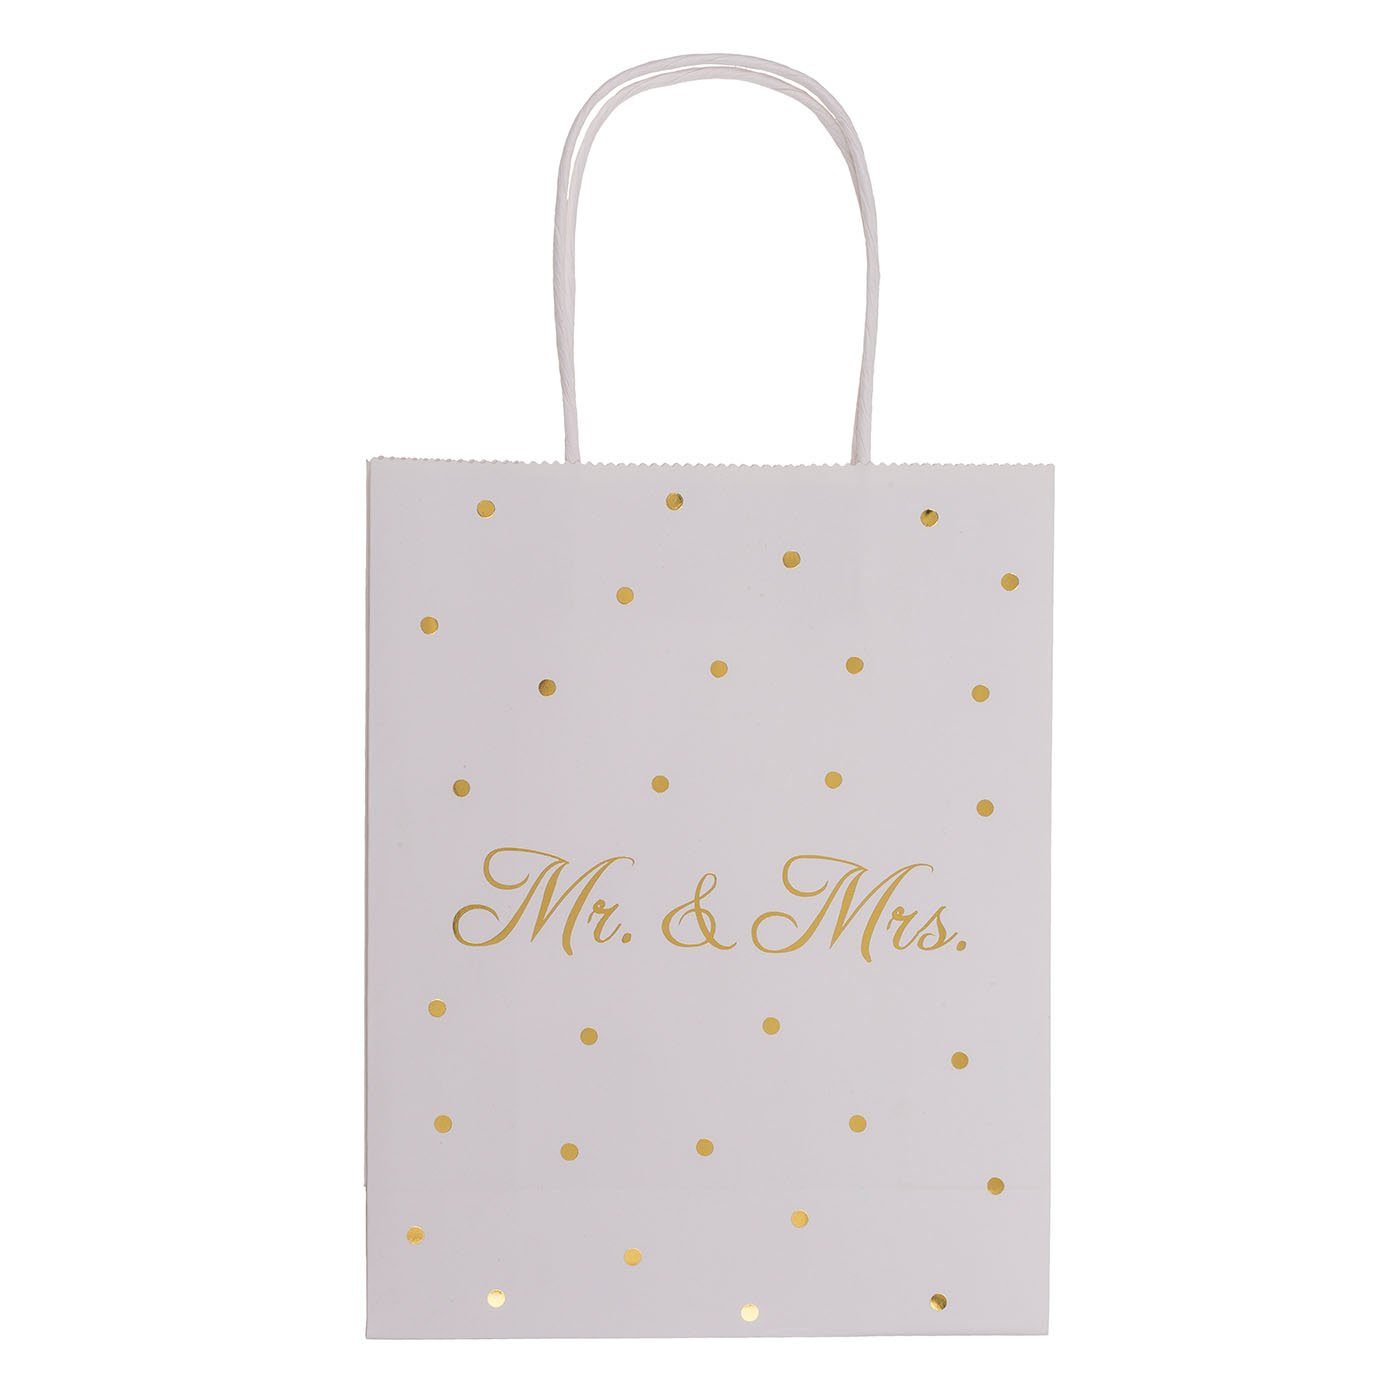 ReWu Geschenkbox Weiße Papier Geschenktüte Mr & Mrs mit goldenen Punkten 18 x 8 x 23 cm